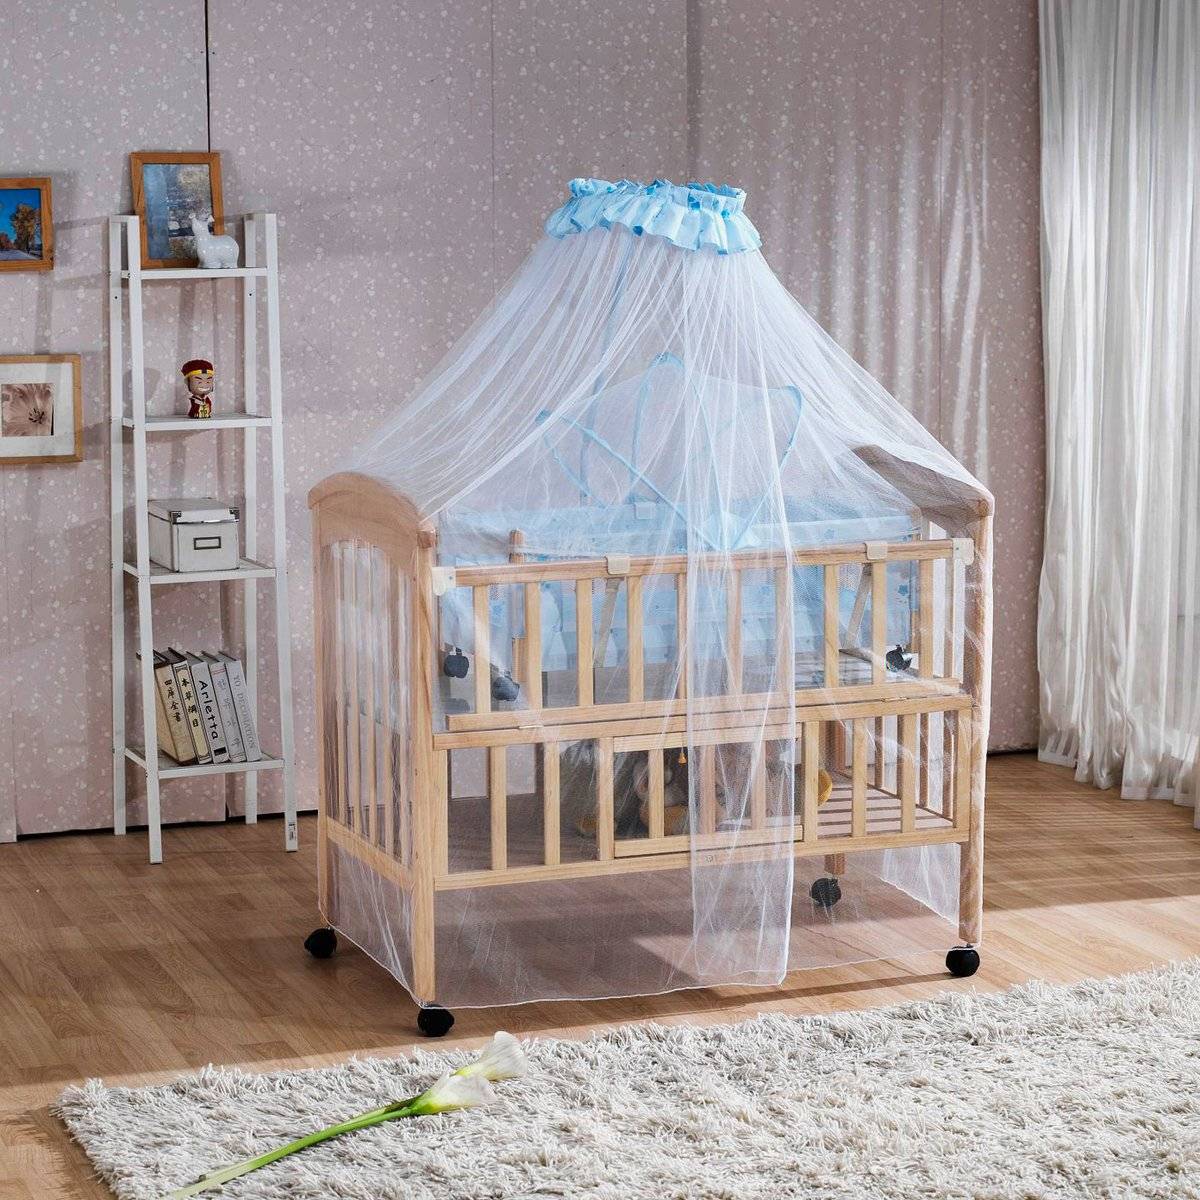 Варианты выбора дизайна и стиля балдахина для детской кровати